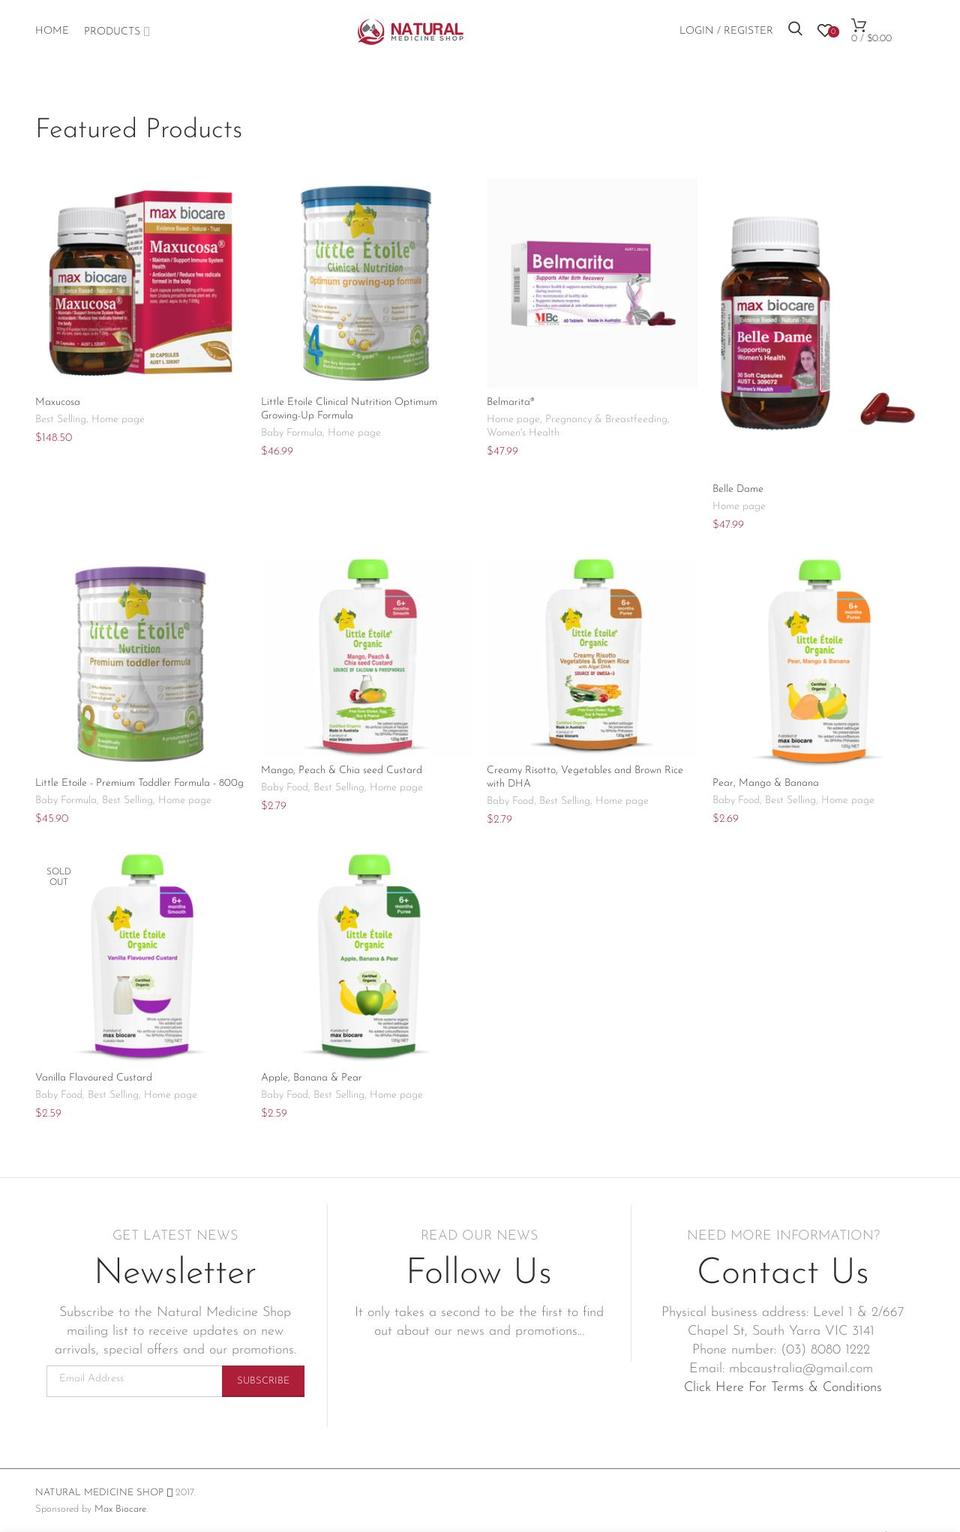 naturalmedicineshop.com.au shopify website screenshot